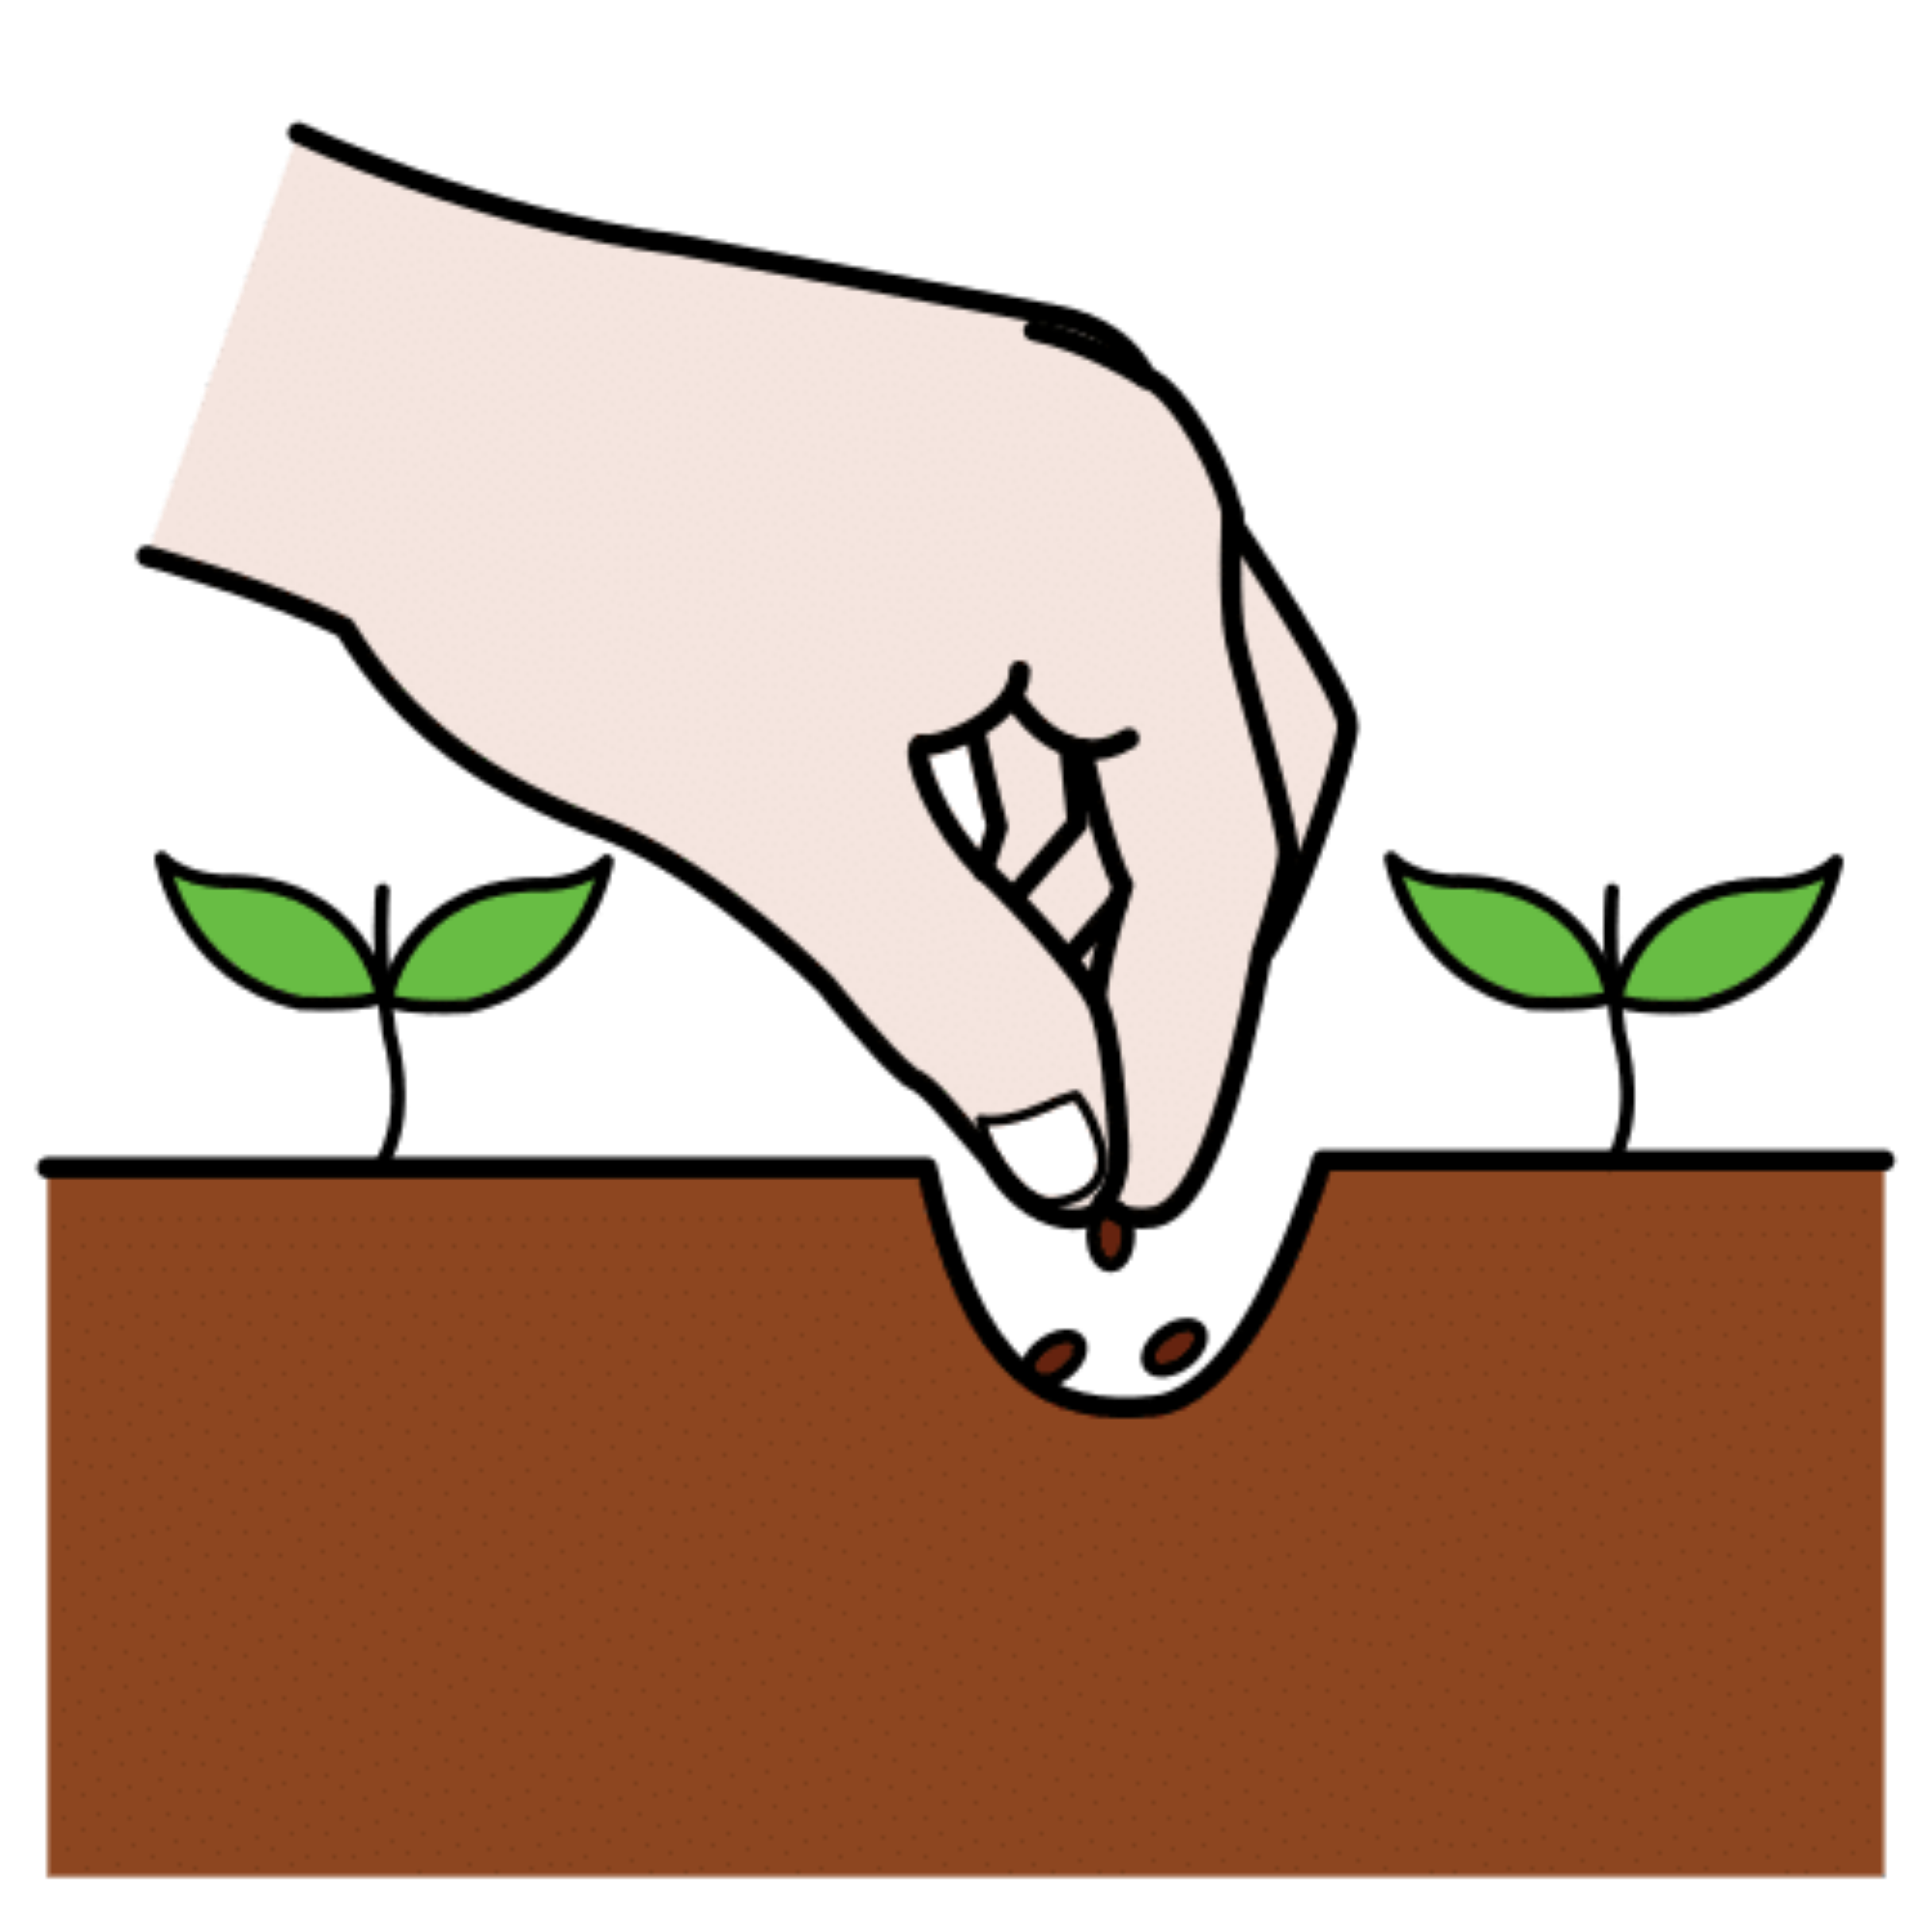 Una mano siembra unas semillas en la tierra.